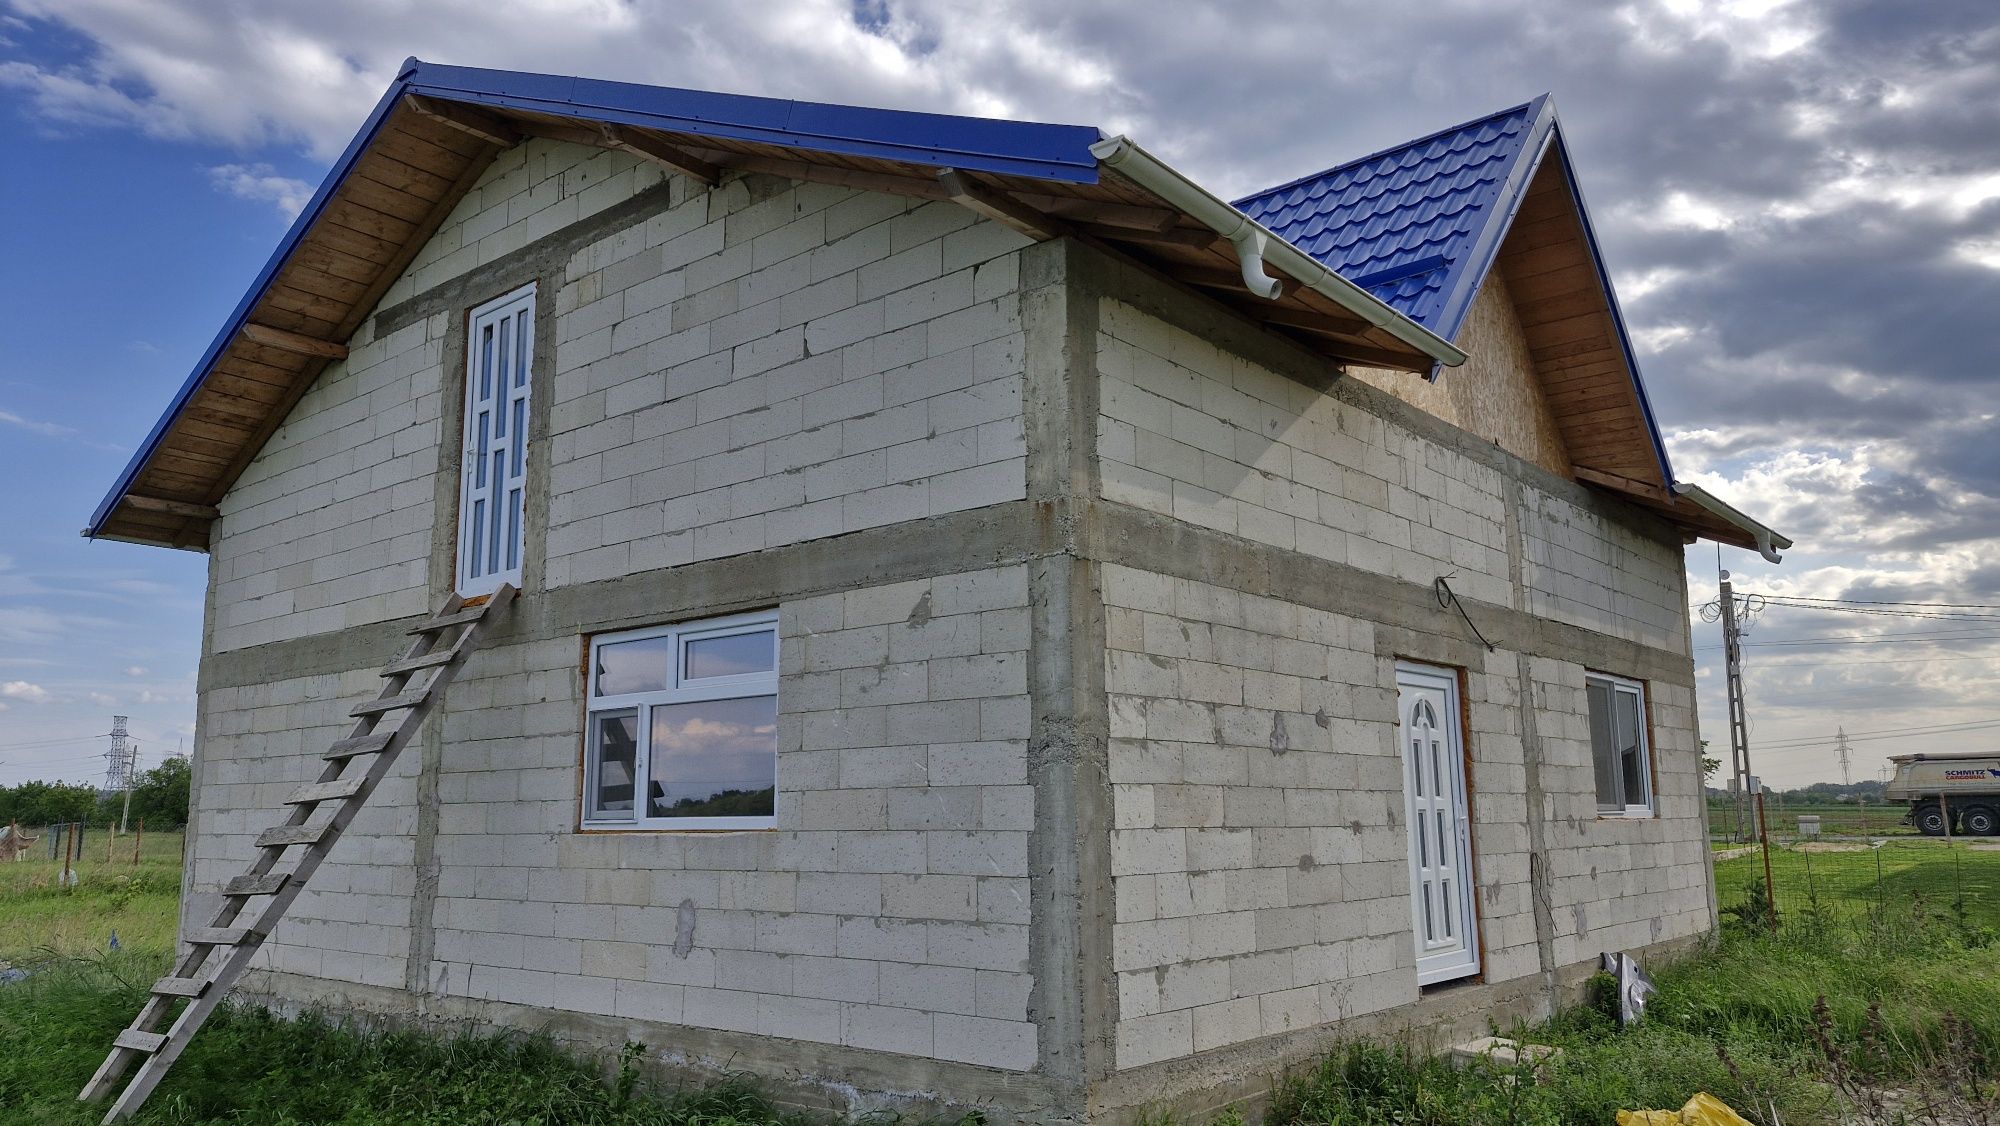 Casa de vanzare in Targsoru Vechi Prahova la 10 km de Ploiesti